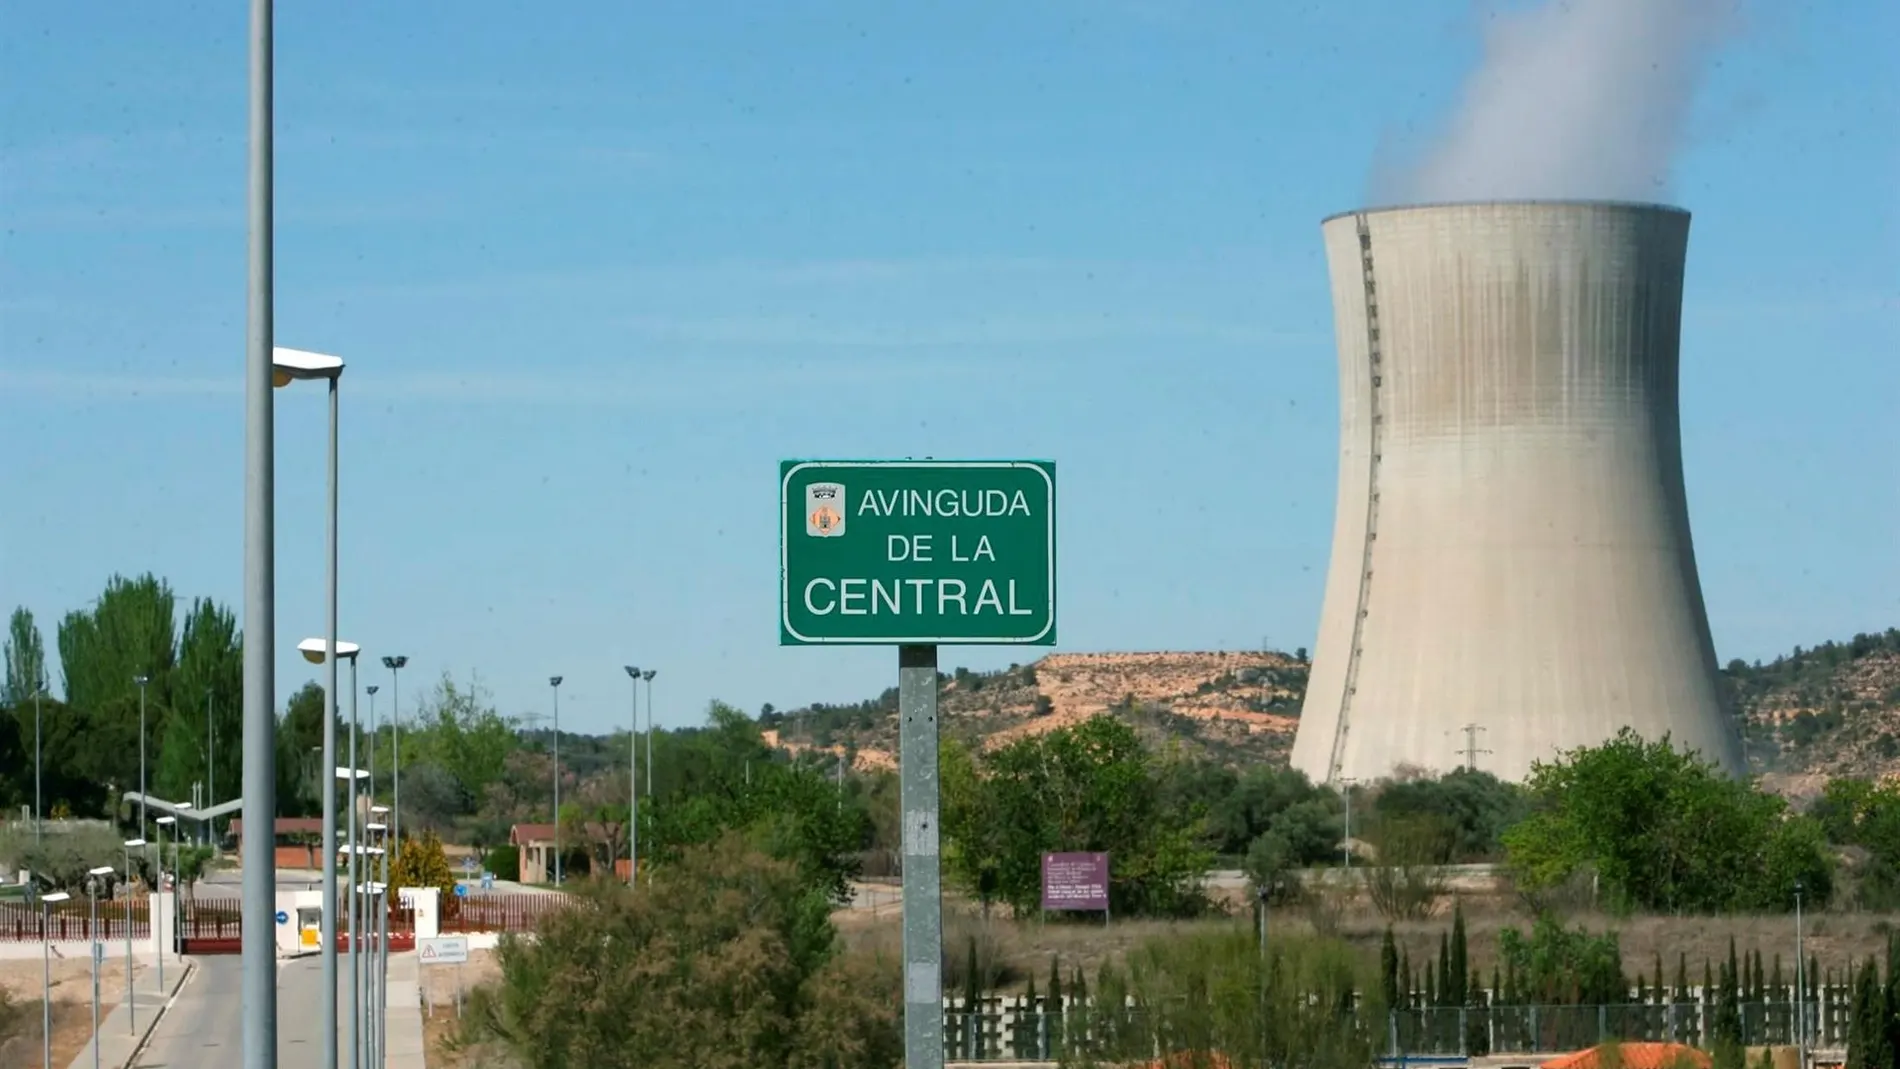 La central nuclear de Ascó lamenta "profundamente" la muerte de un trabajador en un accidente